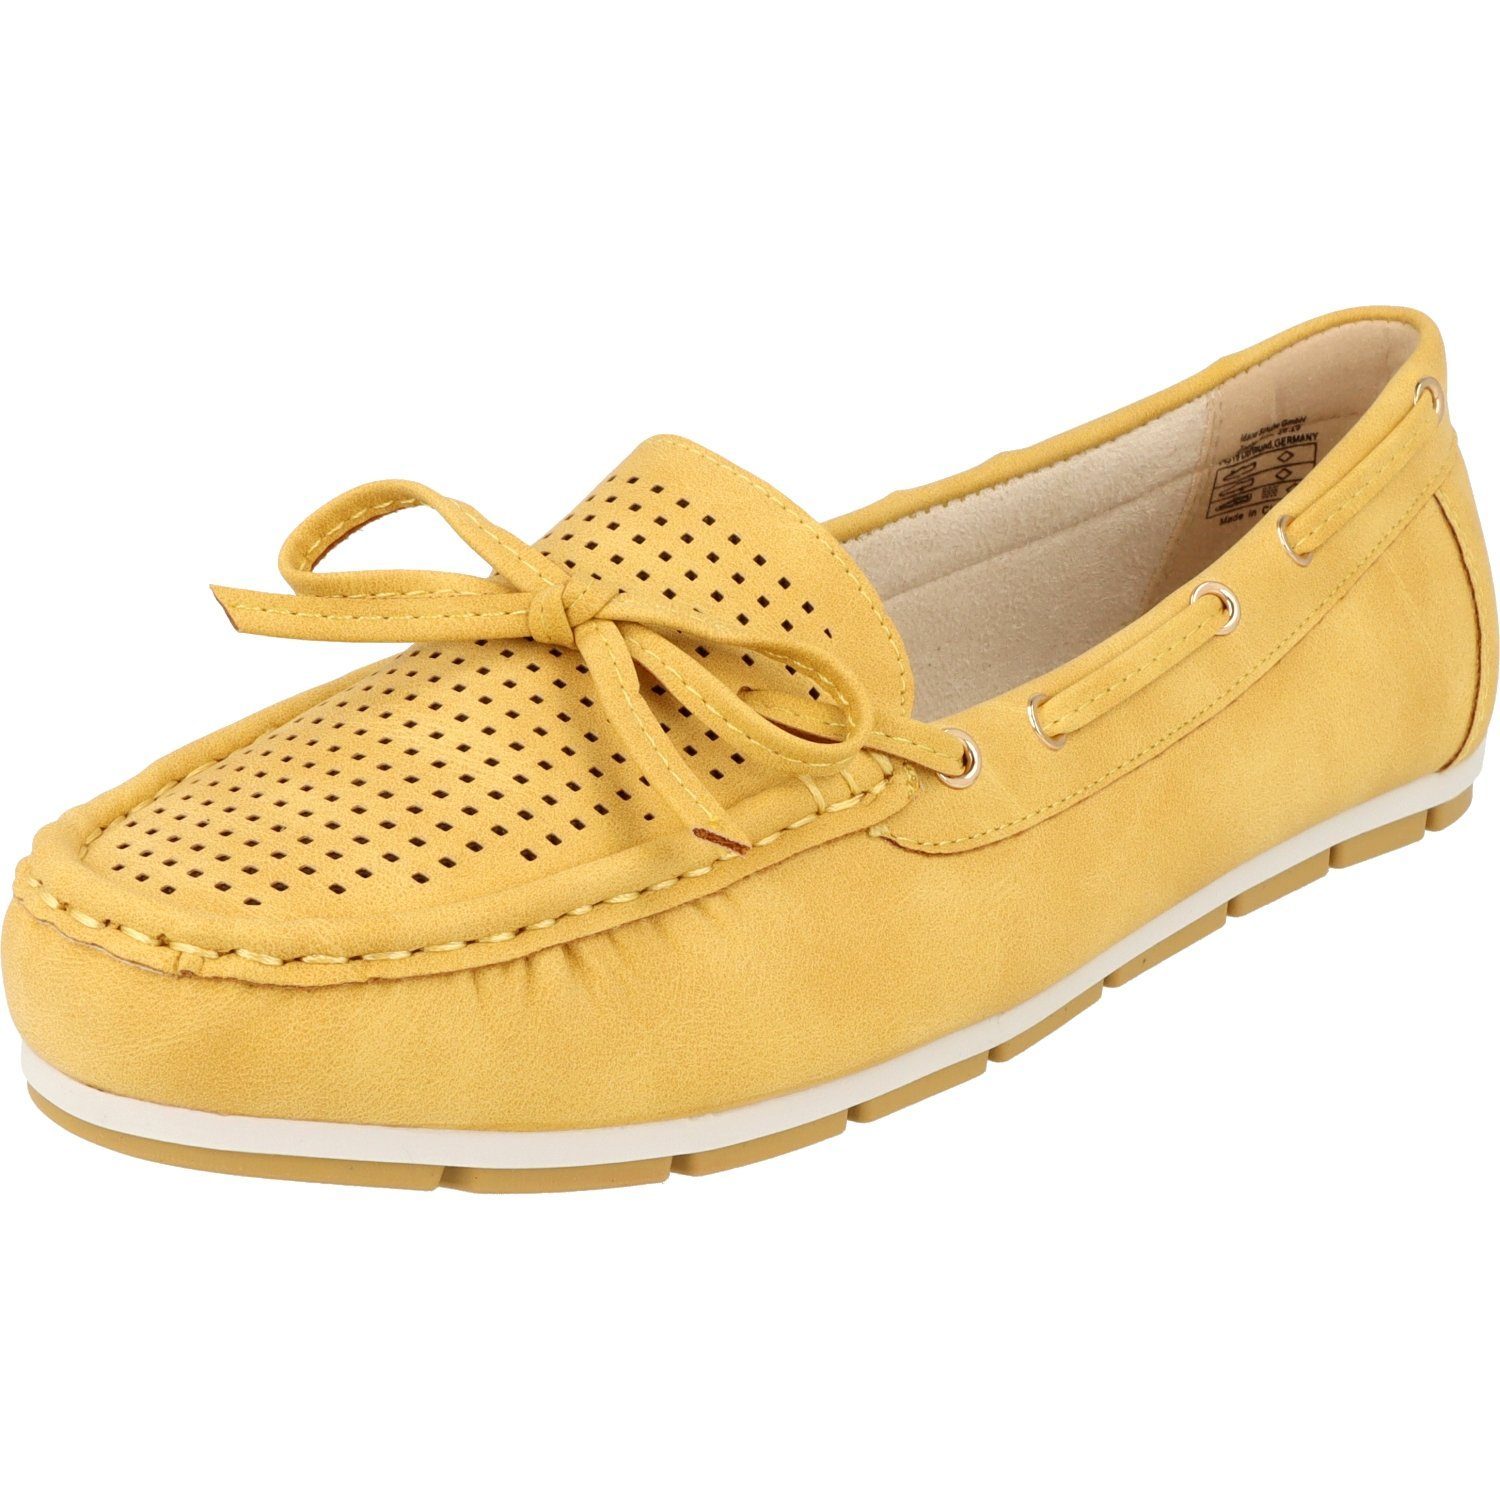 Jane Klain 242-646 Damen Sommer Komfort Schuhe Slipper Yellow Schleife Mokassin